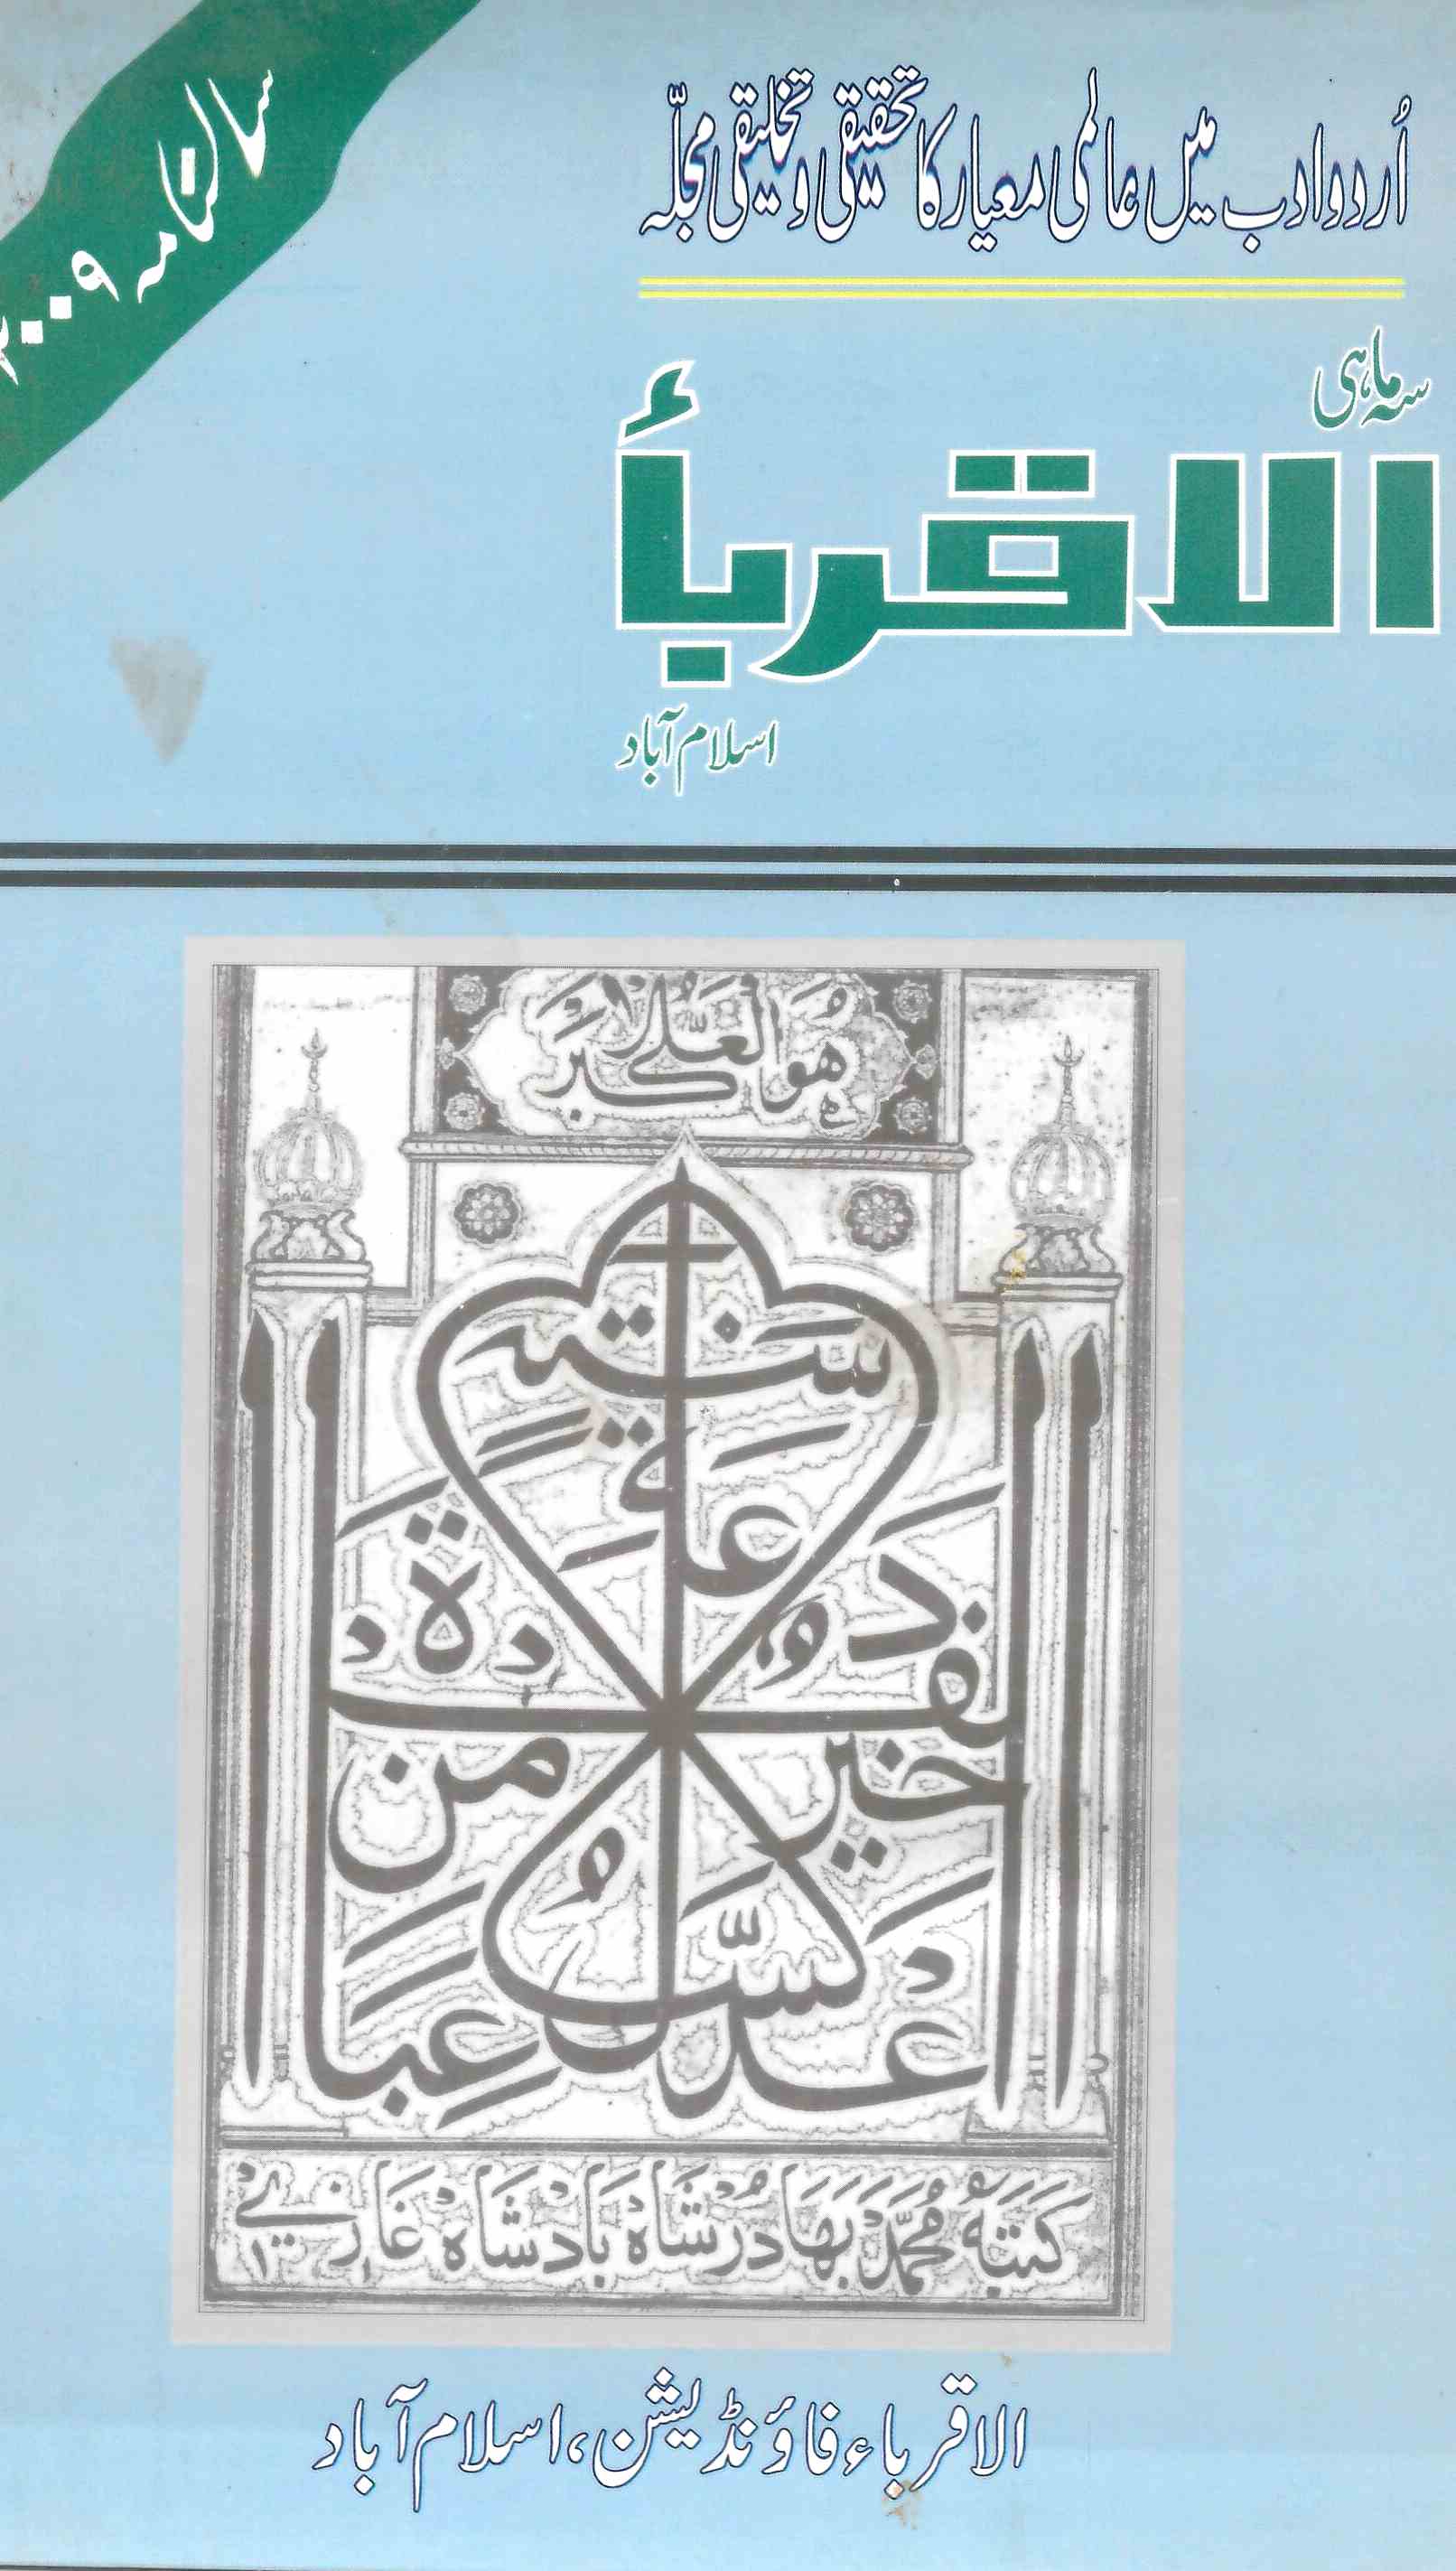 Al-Aqraba, Isalamabad